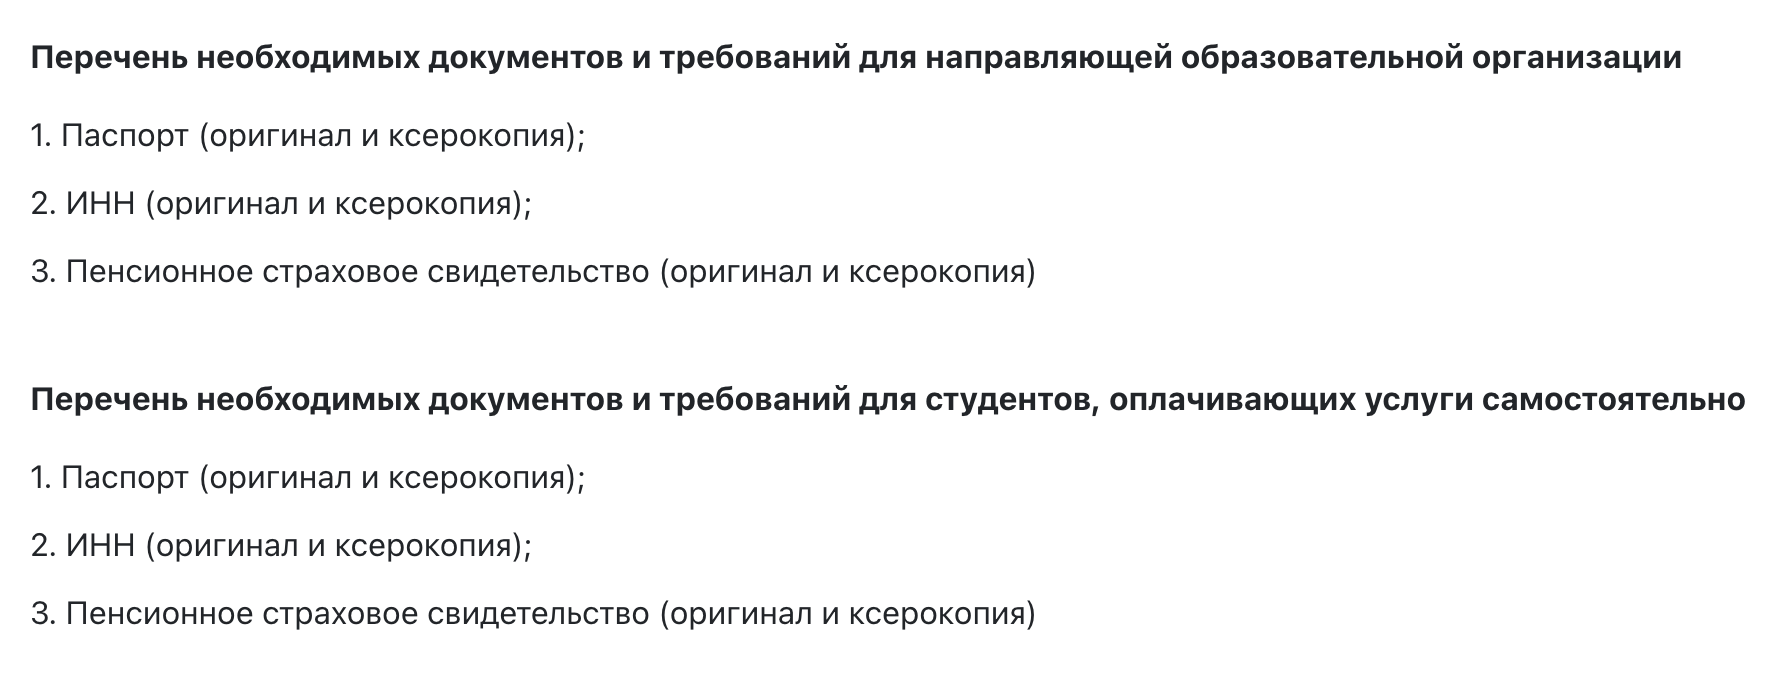 В Северо-Осетинском государственном университете требуют минимальный набор документов, но по телефону уточнили, что студенты должны предъявлять сертификат о вакцинации от коронавируса или отрицательный результат ПЦР⁠-⁠теста, сделанного за последние 3 дня